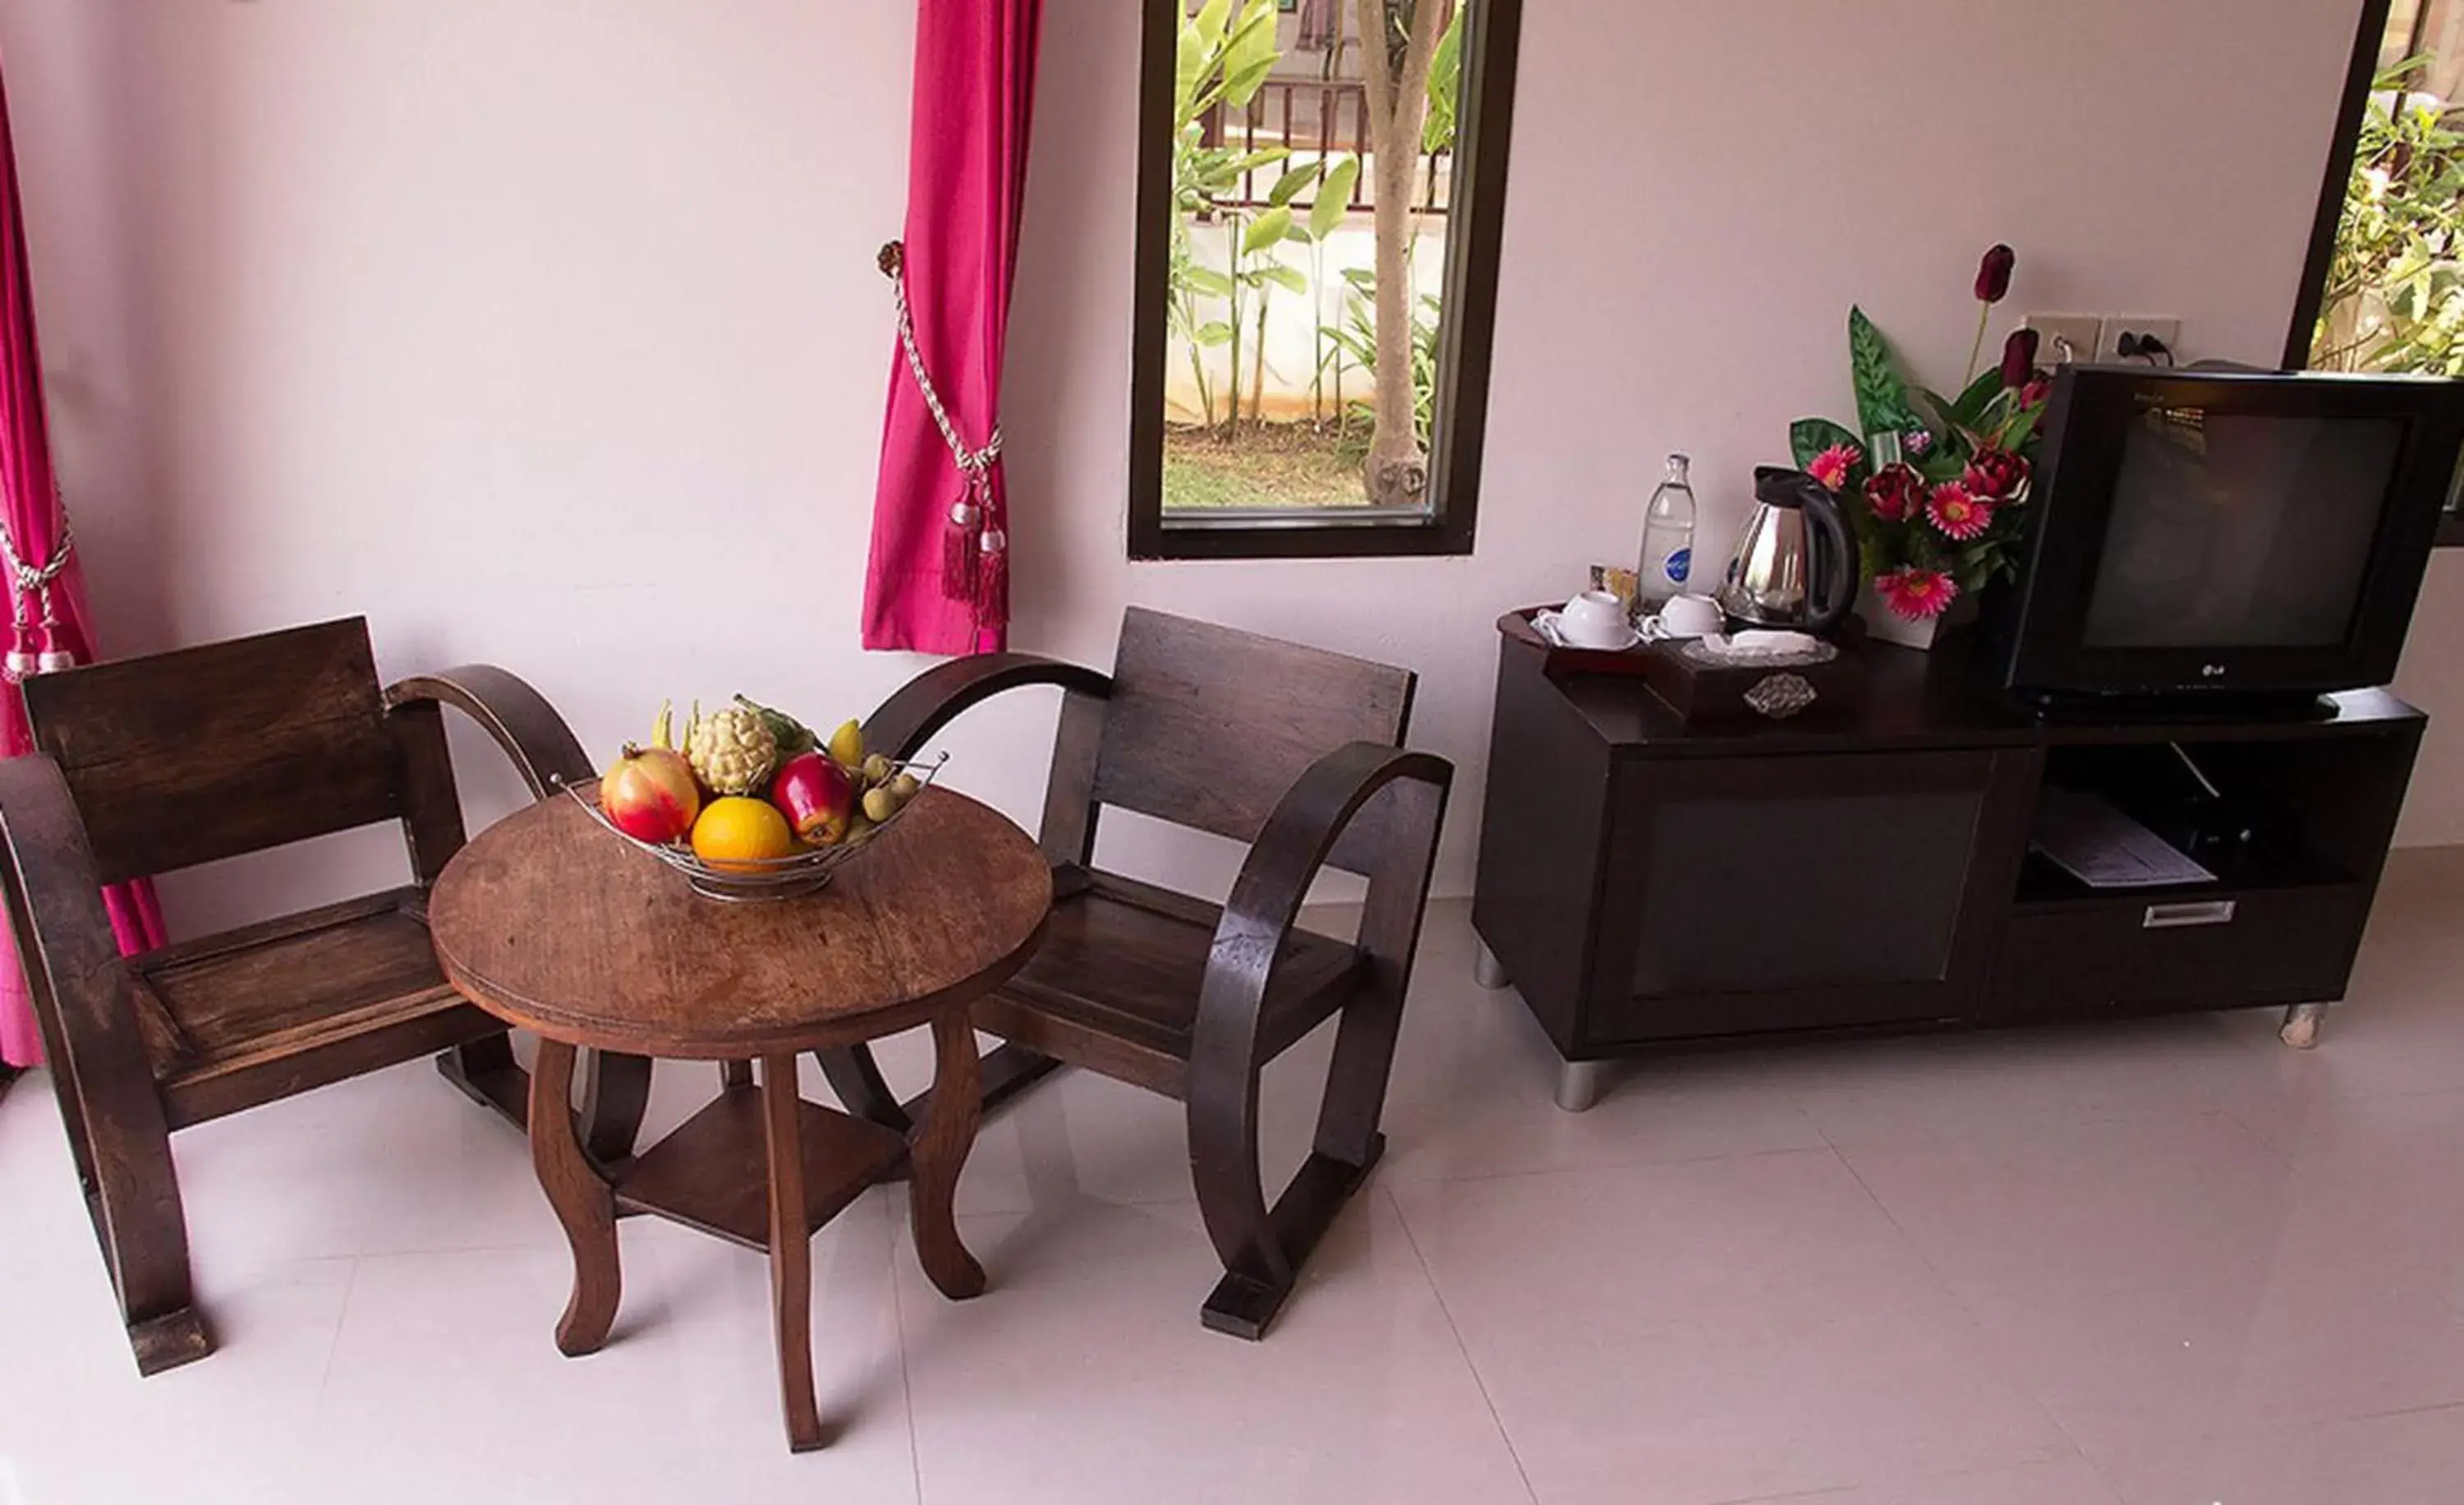 Seating area, Dining Area in Pranburi Cabana Resort